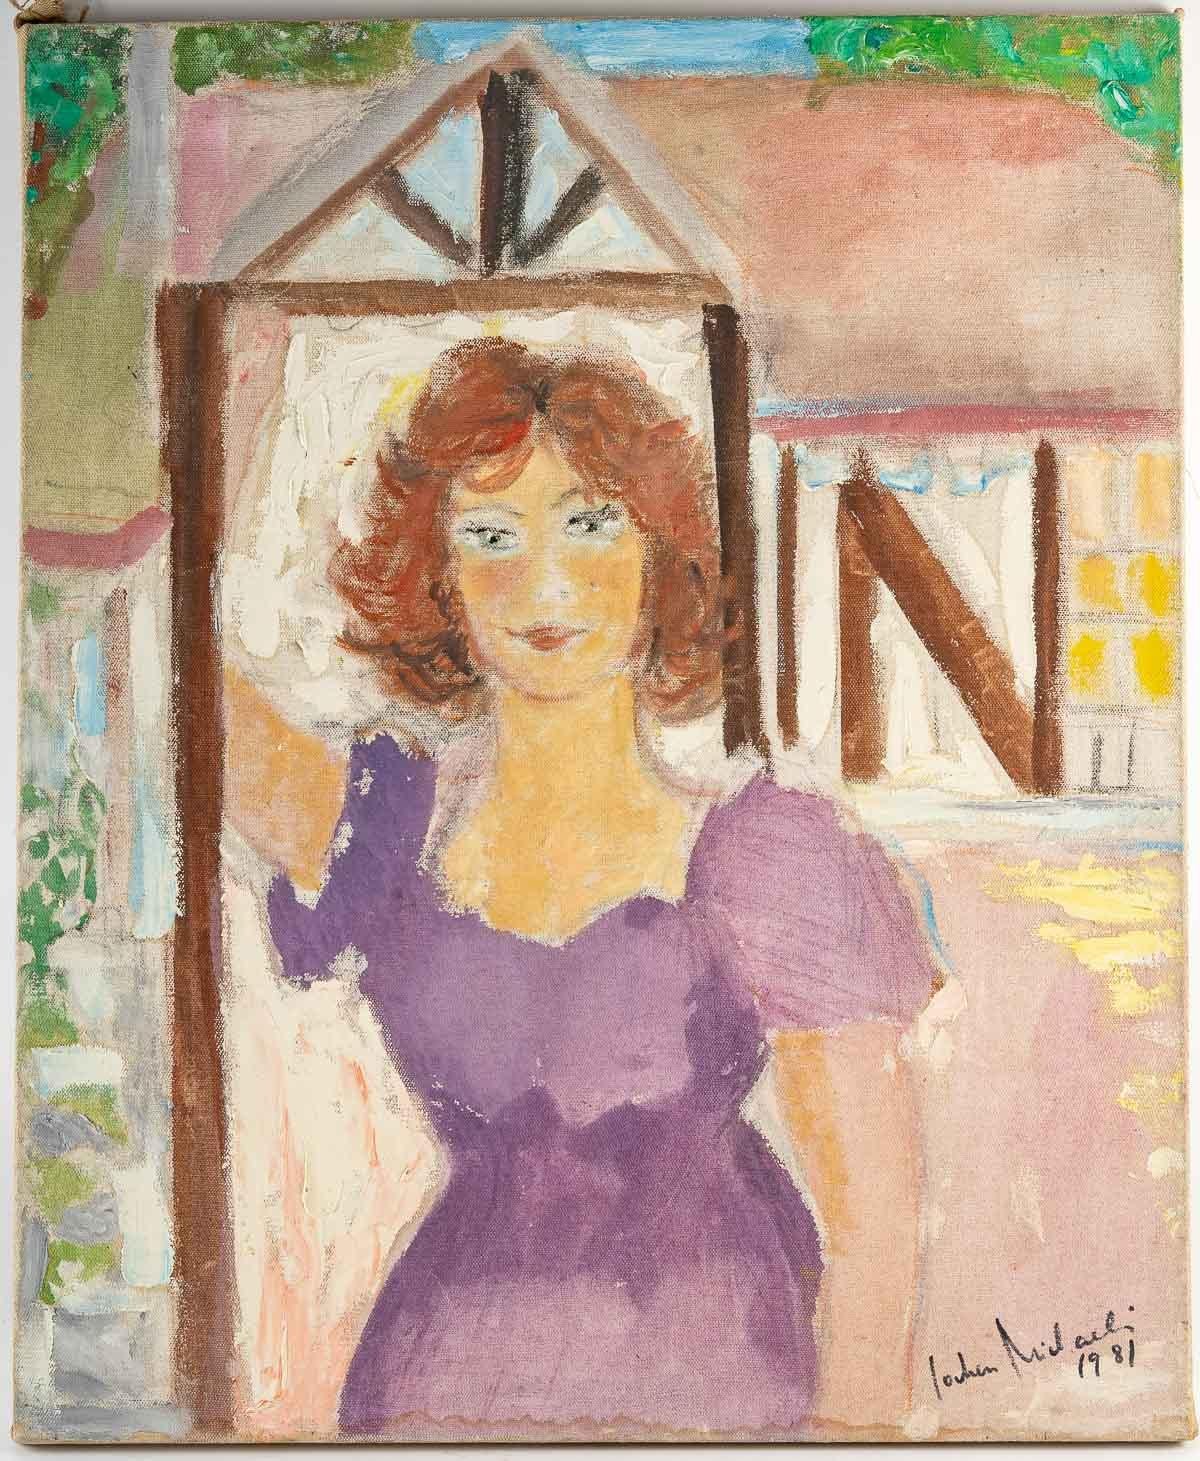 Peinture d'une femme, 20e siècle
Peinture, huile sur toile, signée et datée de 1981, représentant une jeune femme en tenue de printemps.
Dimensions : H : 73 cm, L : 60 cm, P : 2 cm : H : 73 cm, L : 60 cm, P : 2 cm.